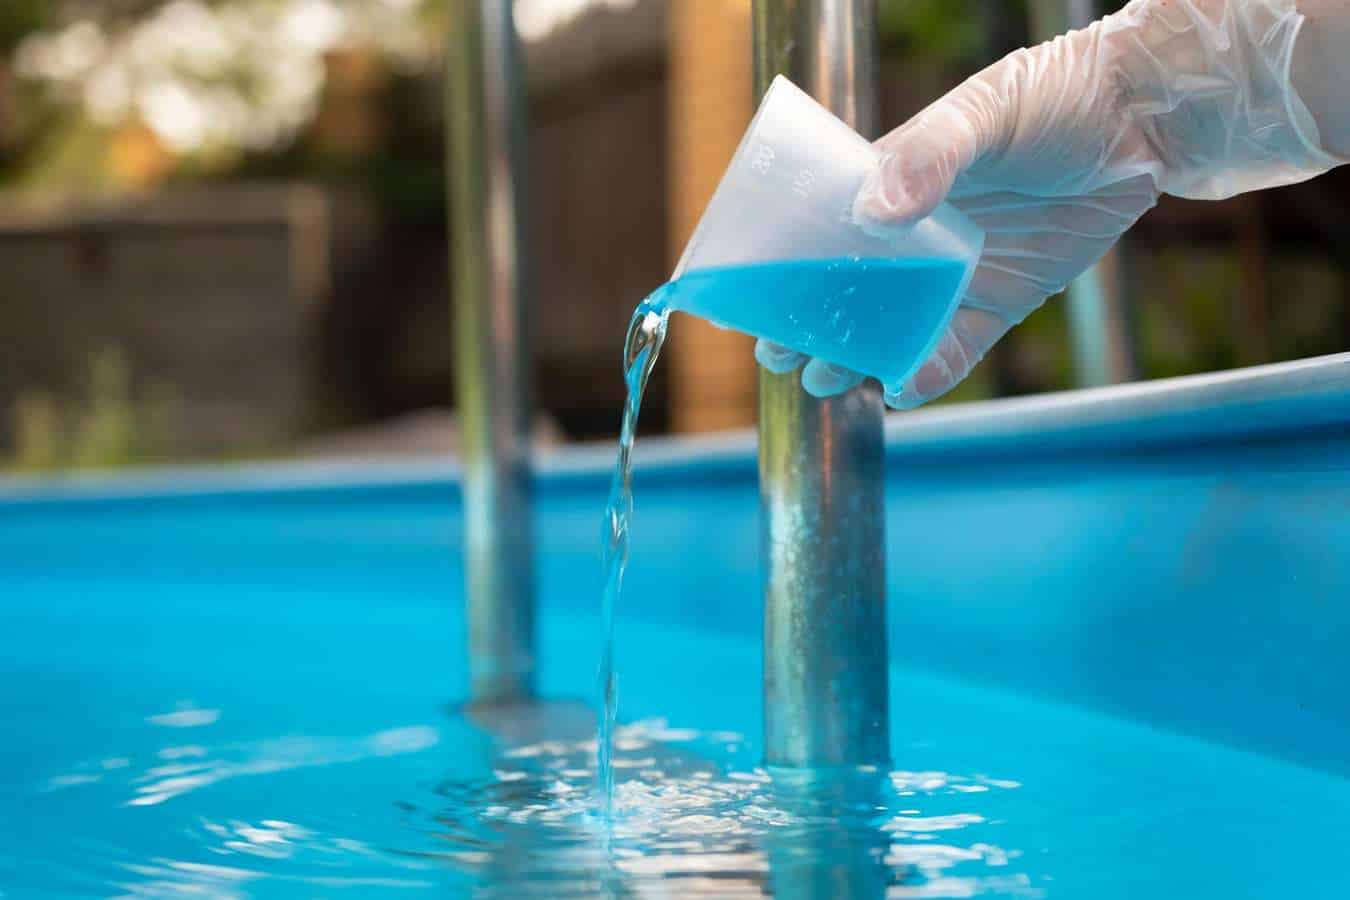 Traiter l'eau de sa piscine avec un algicide